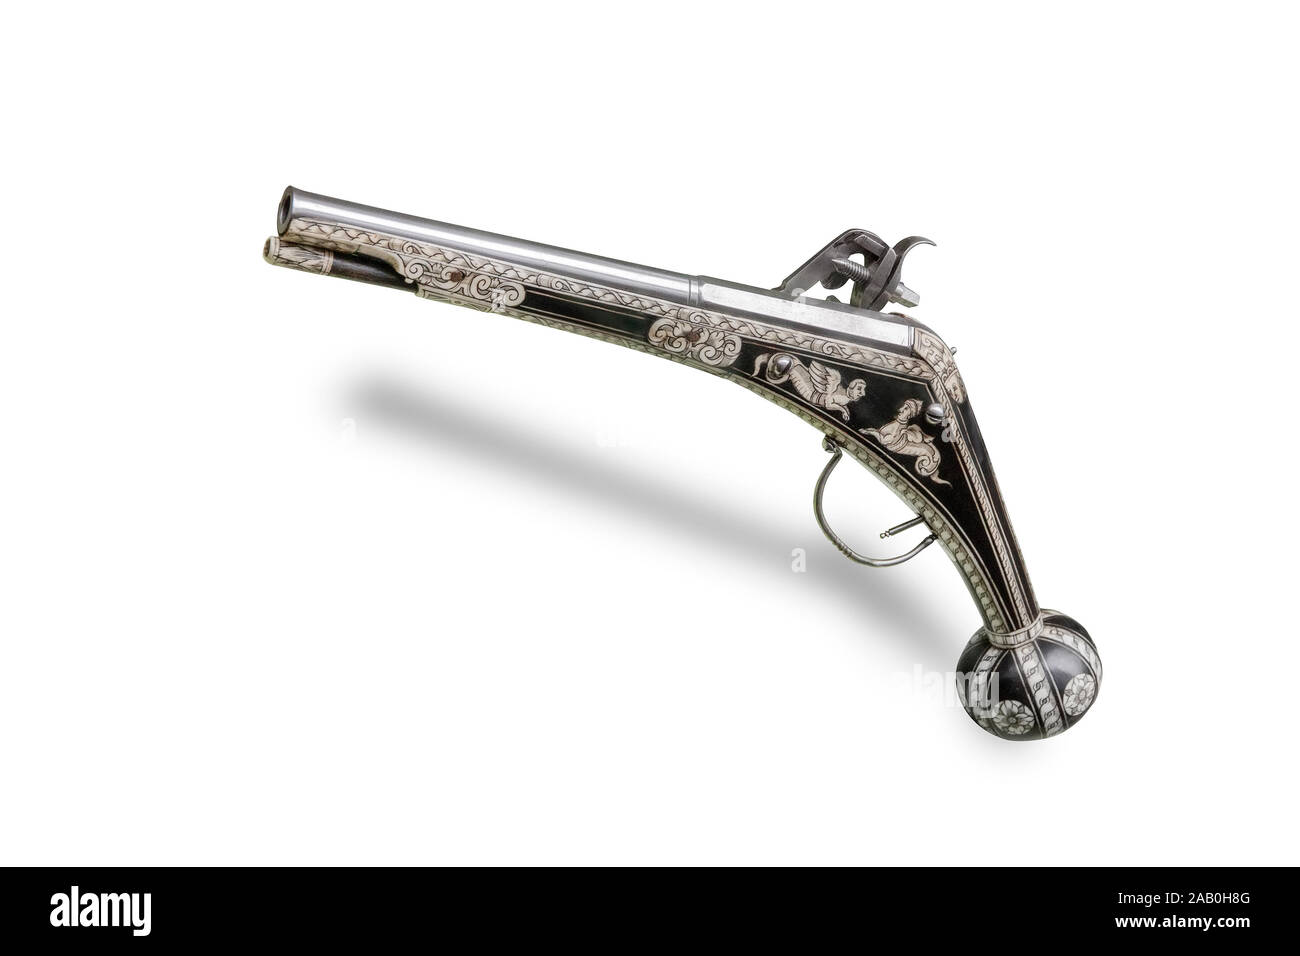 Pistolet allemand (gun) avec wheellock. La fin du 16ème siècle. Isolé sur le fond blanc Banque D'Images